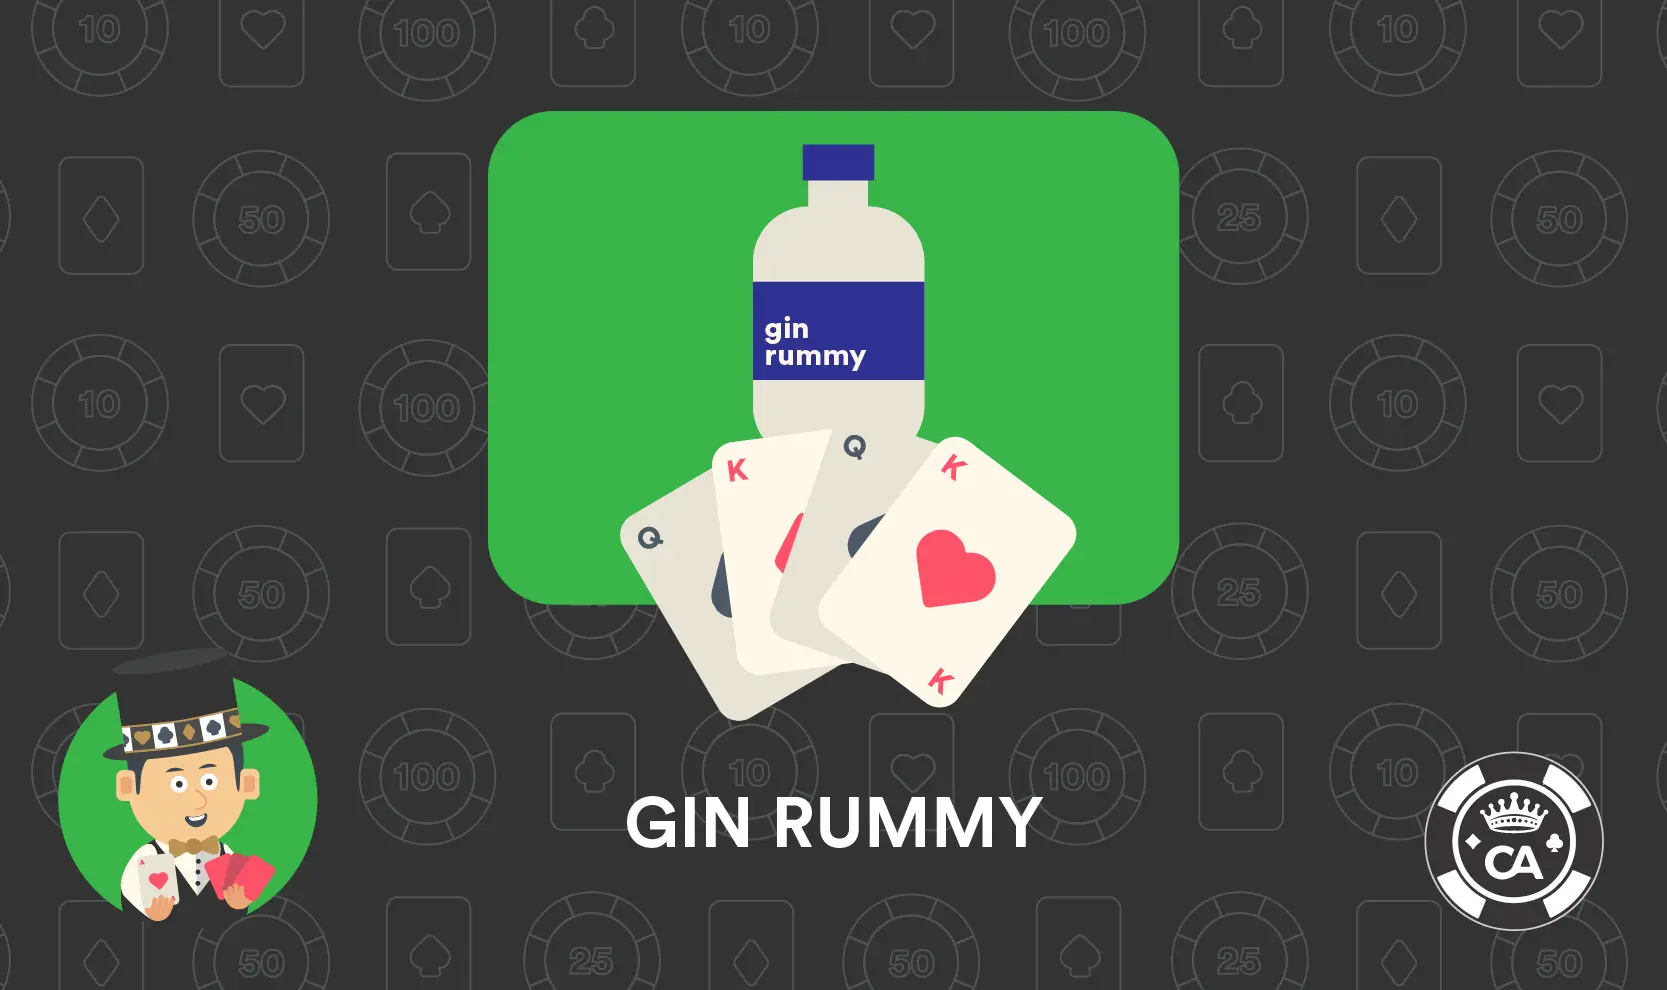 Reglas Gin Rummy